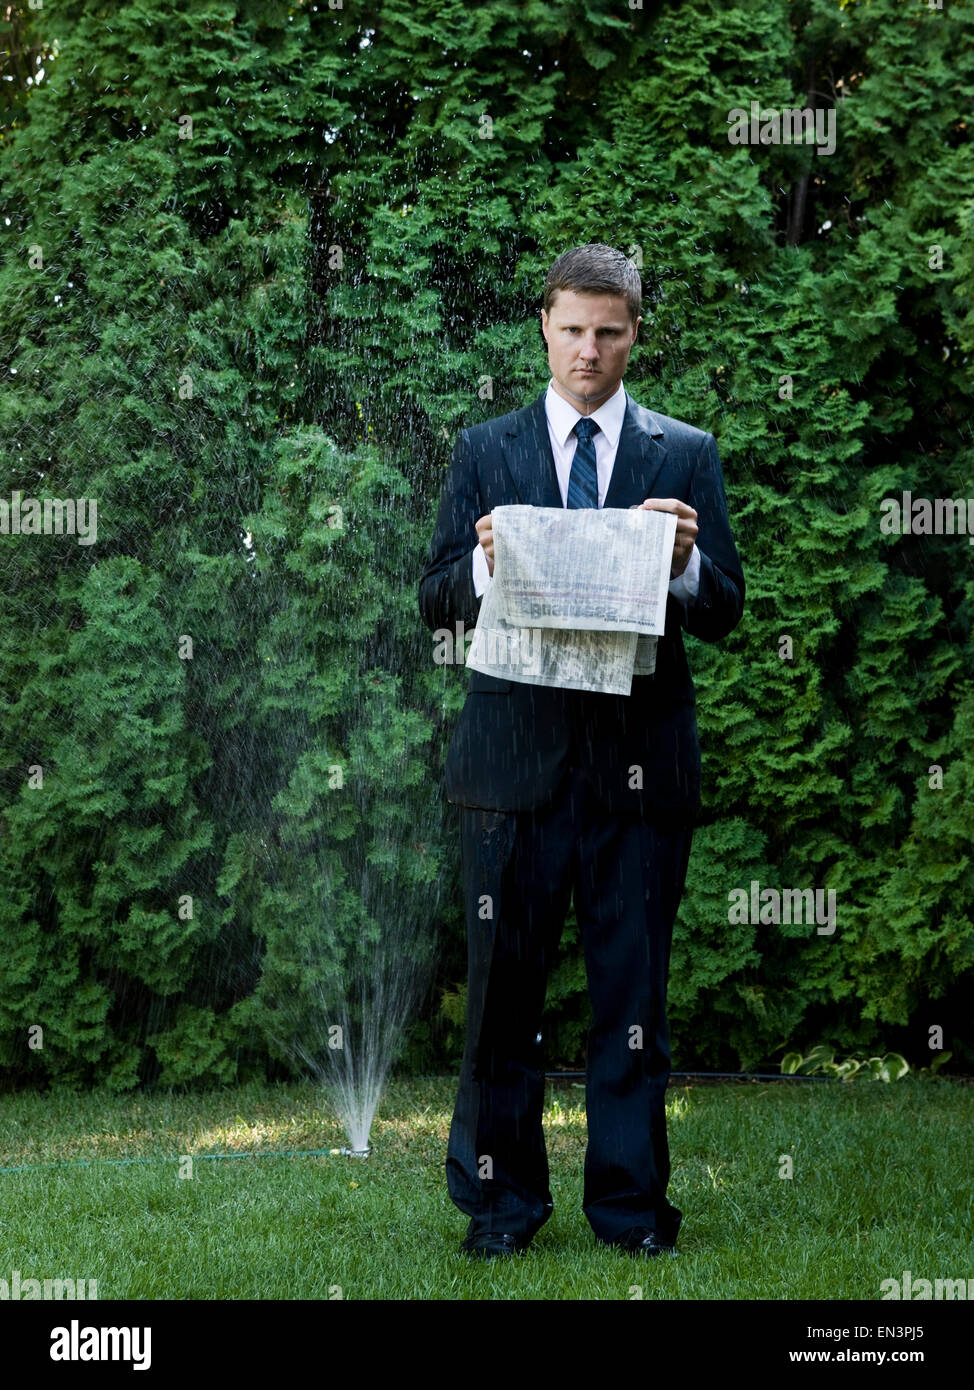 Homme en costume debout à côté d'un sprinkleur Banque D'Images